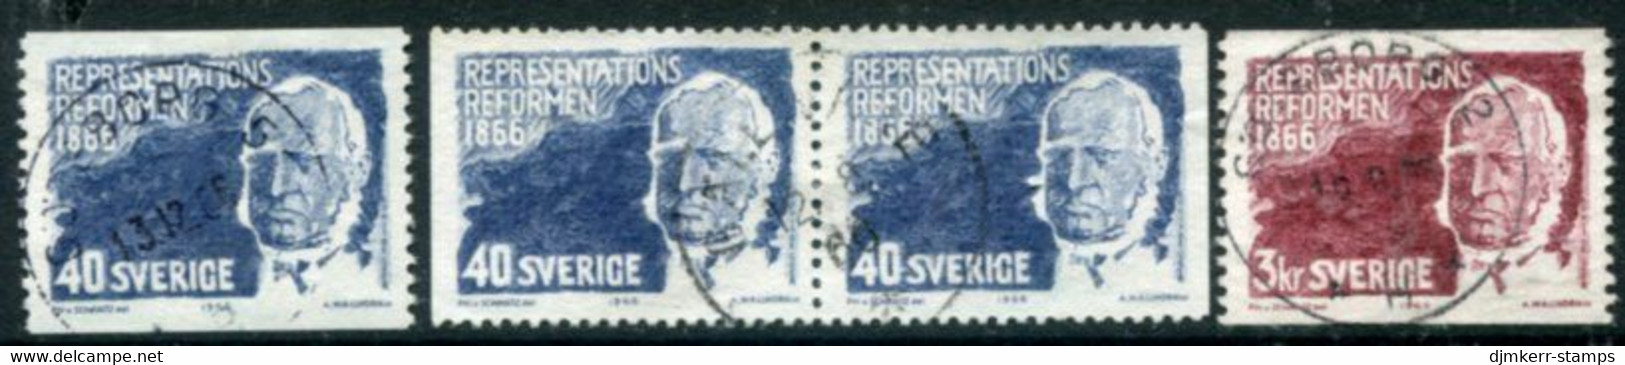 SWEDEN 1966 Centenary Of Constitutional Reform Used.  Michel 553-54 - Gebruikt